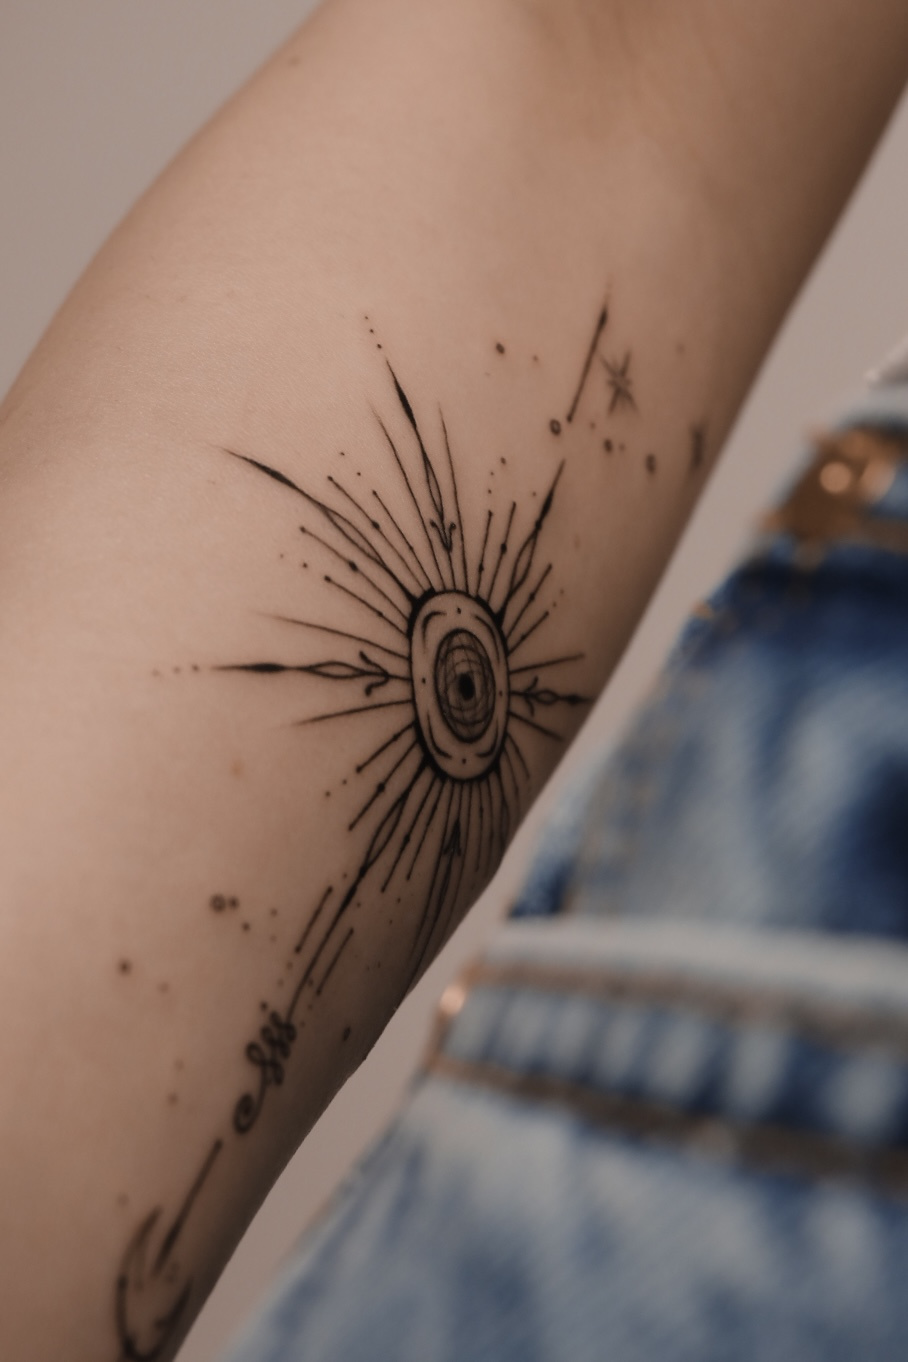 Татуировки: изображения, картинки, фотографии - Татуировки: фотографии | Shutterstock